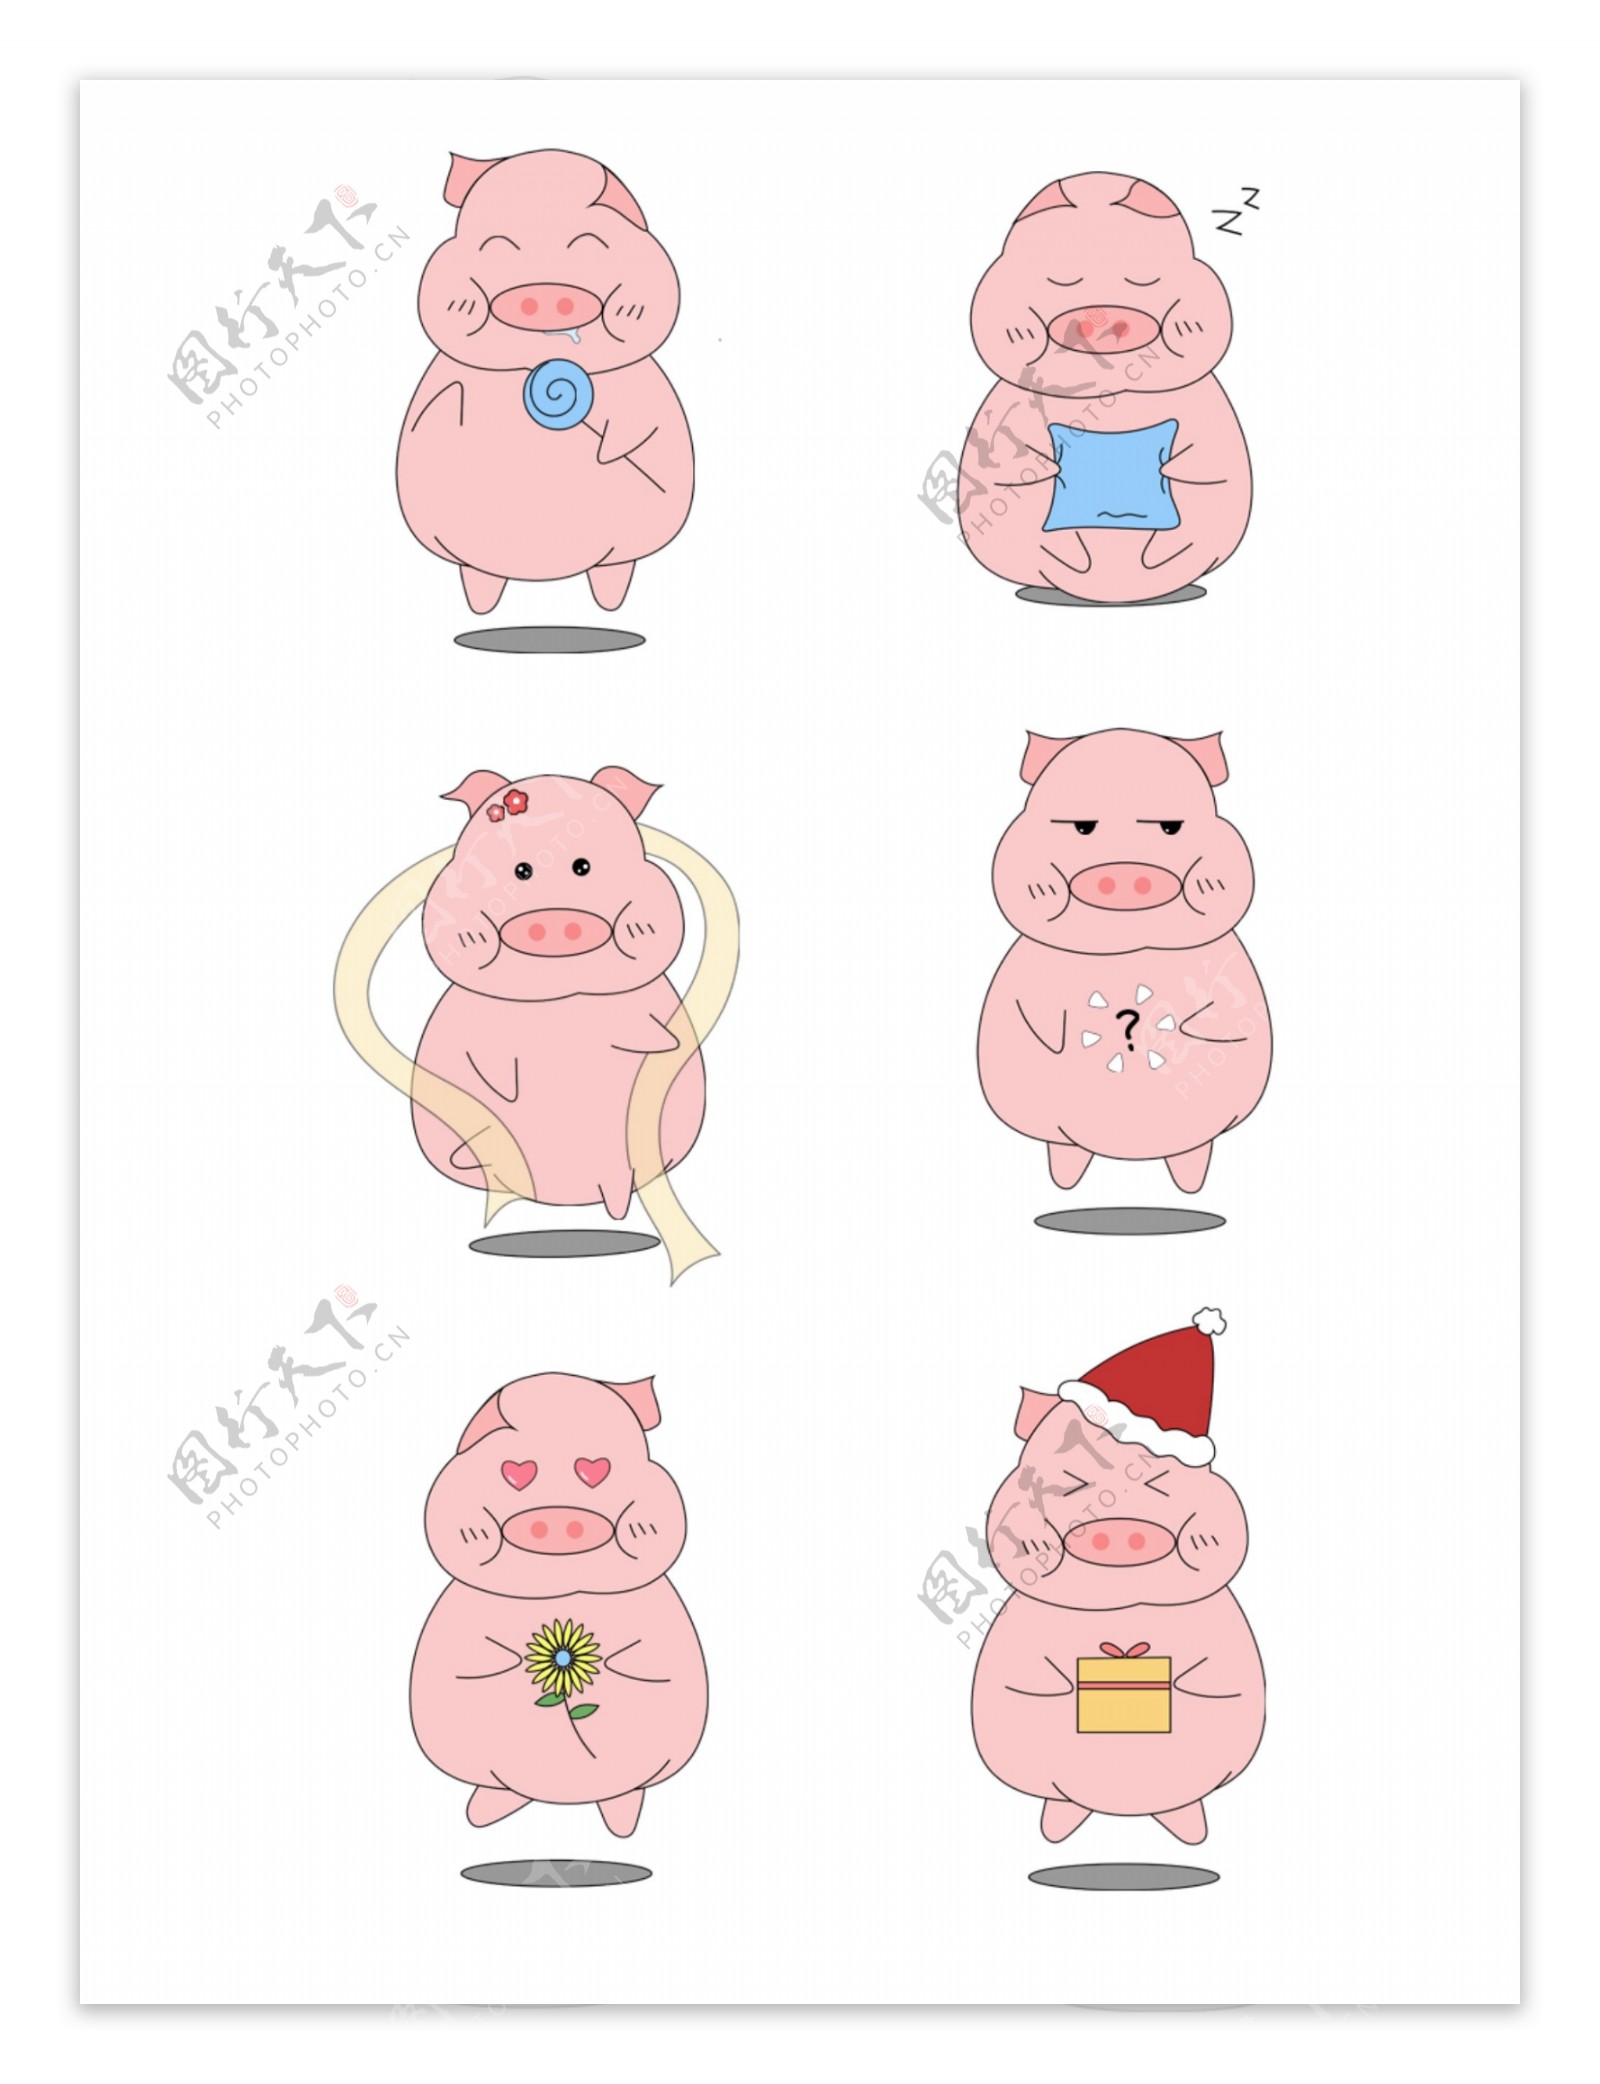 漂亮的粉色猪，卡通矢量图插图 向量例证. 插画 包括有 设计, 查出, 本质, 愉快, 字符, 婴孩, 快乐 - 179652989